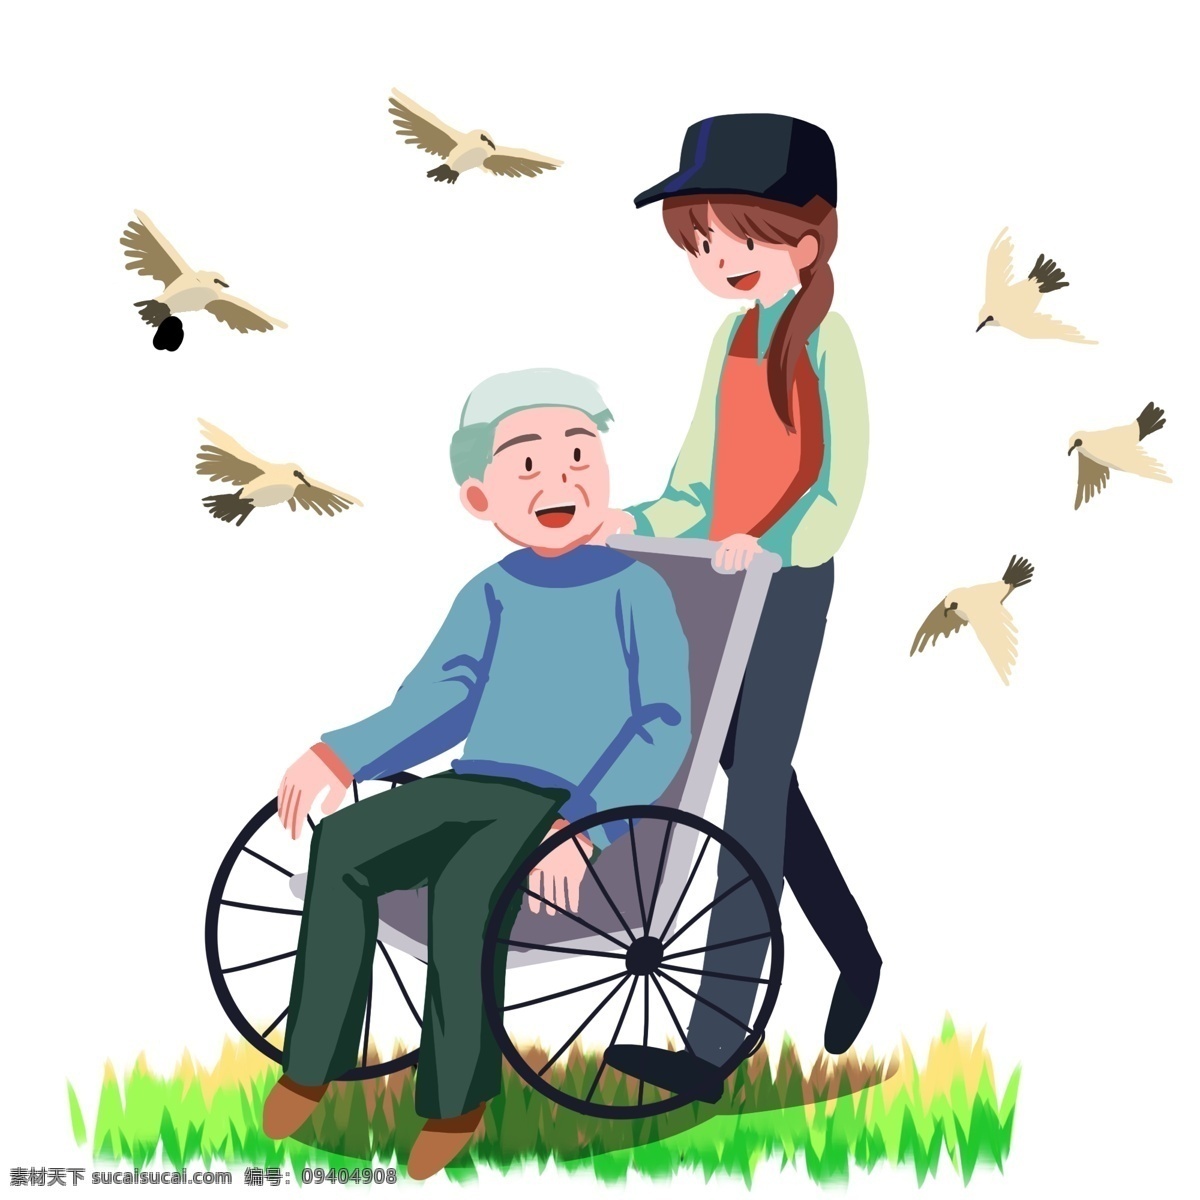 志愿者 女孩 卡通 人物 老爷爷 长发 鸽子 卡通人物 手绘图 小草 矢量图 轮椅 轮子 老人 红色 衣服 白发